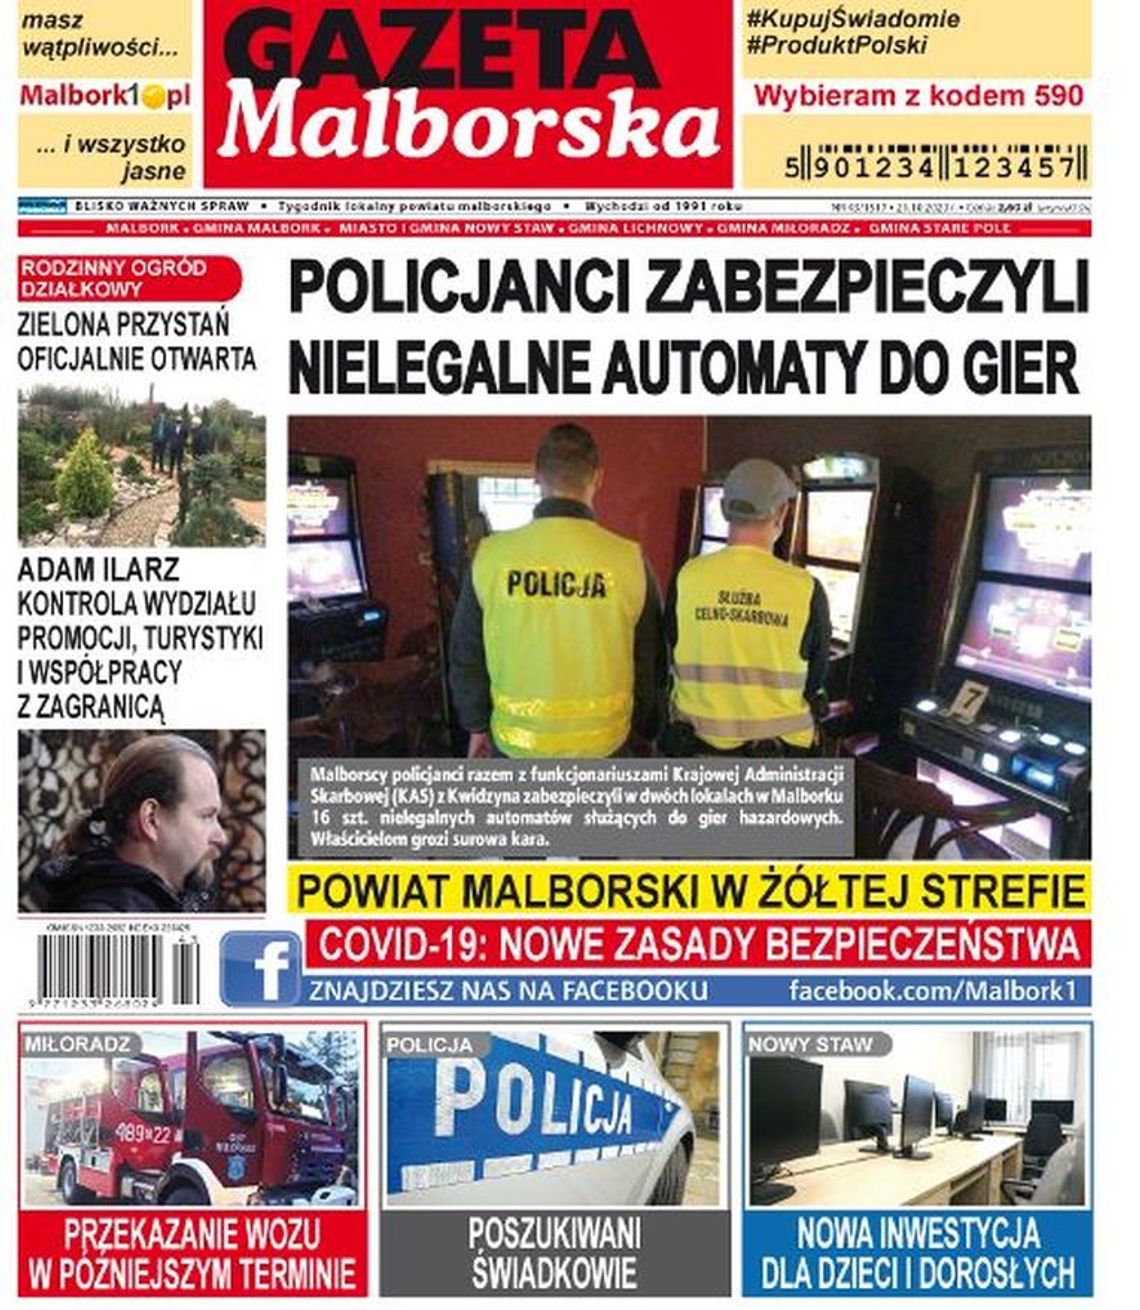 Najnowszy numer Gazety Malborskiej już w sprzedaży. Najświeższe wiadomości z Malborka i gmin naszego powiatu już w Twoim kiosku. Co w środku?